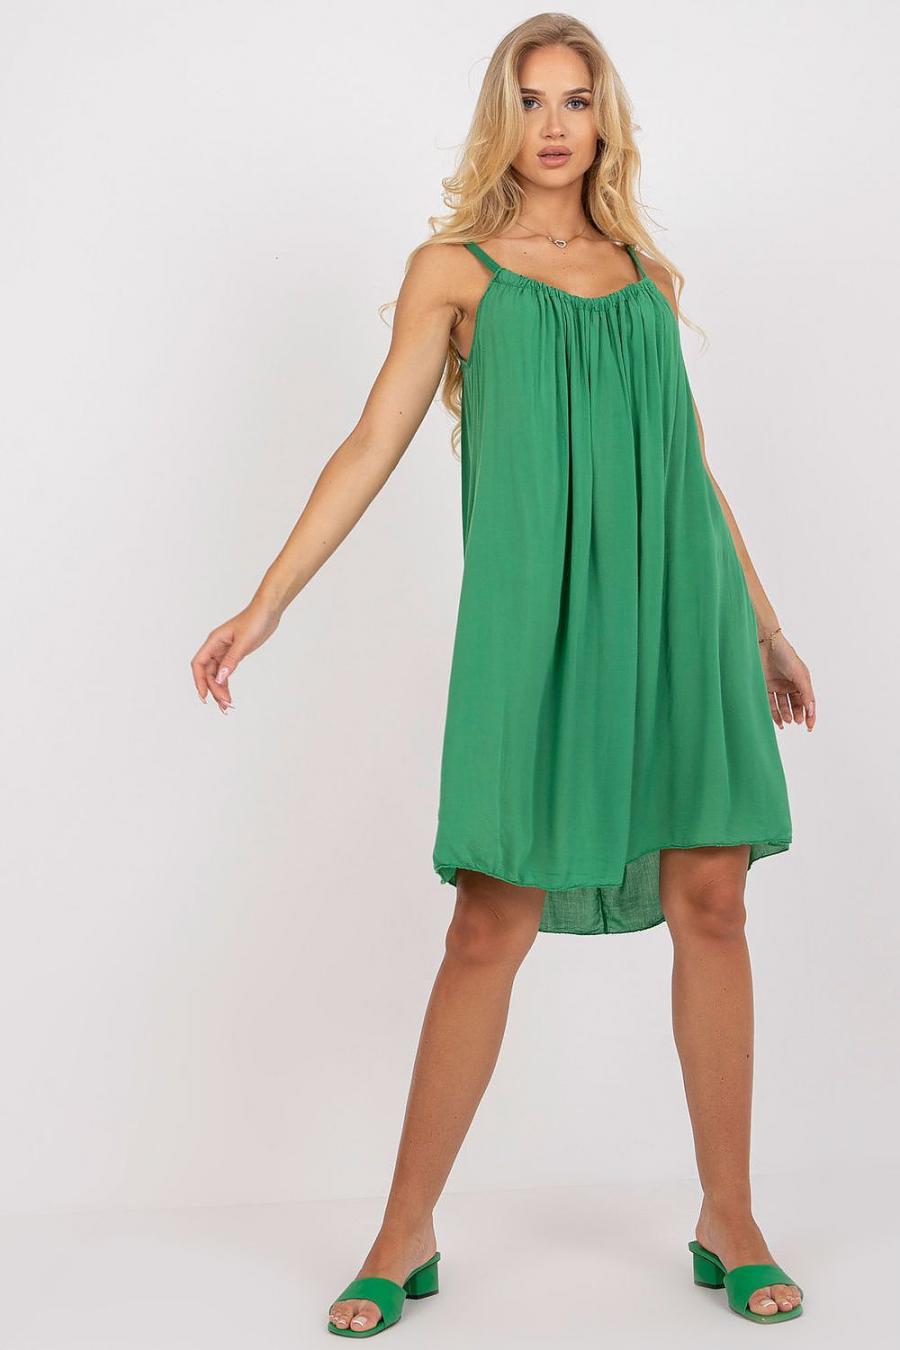 Ostatní značky šaty dámské 165898 - Zelená - velikost S